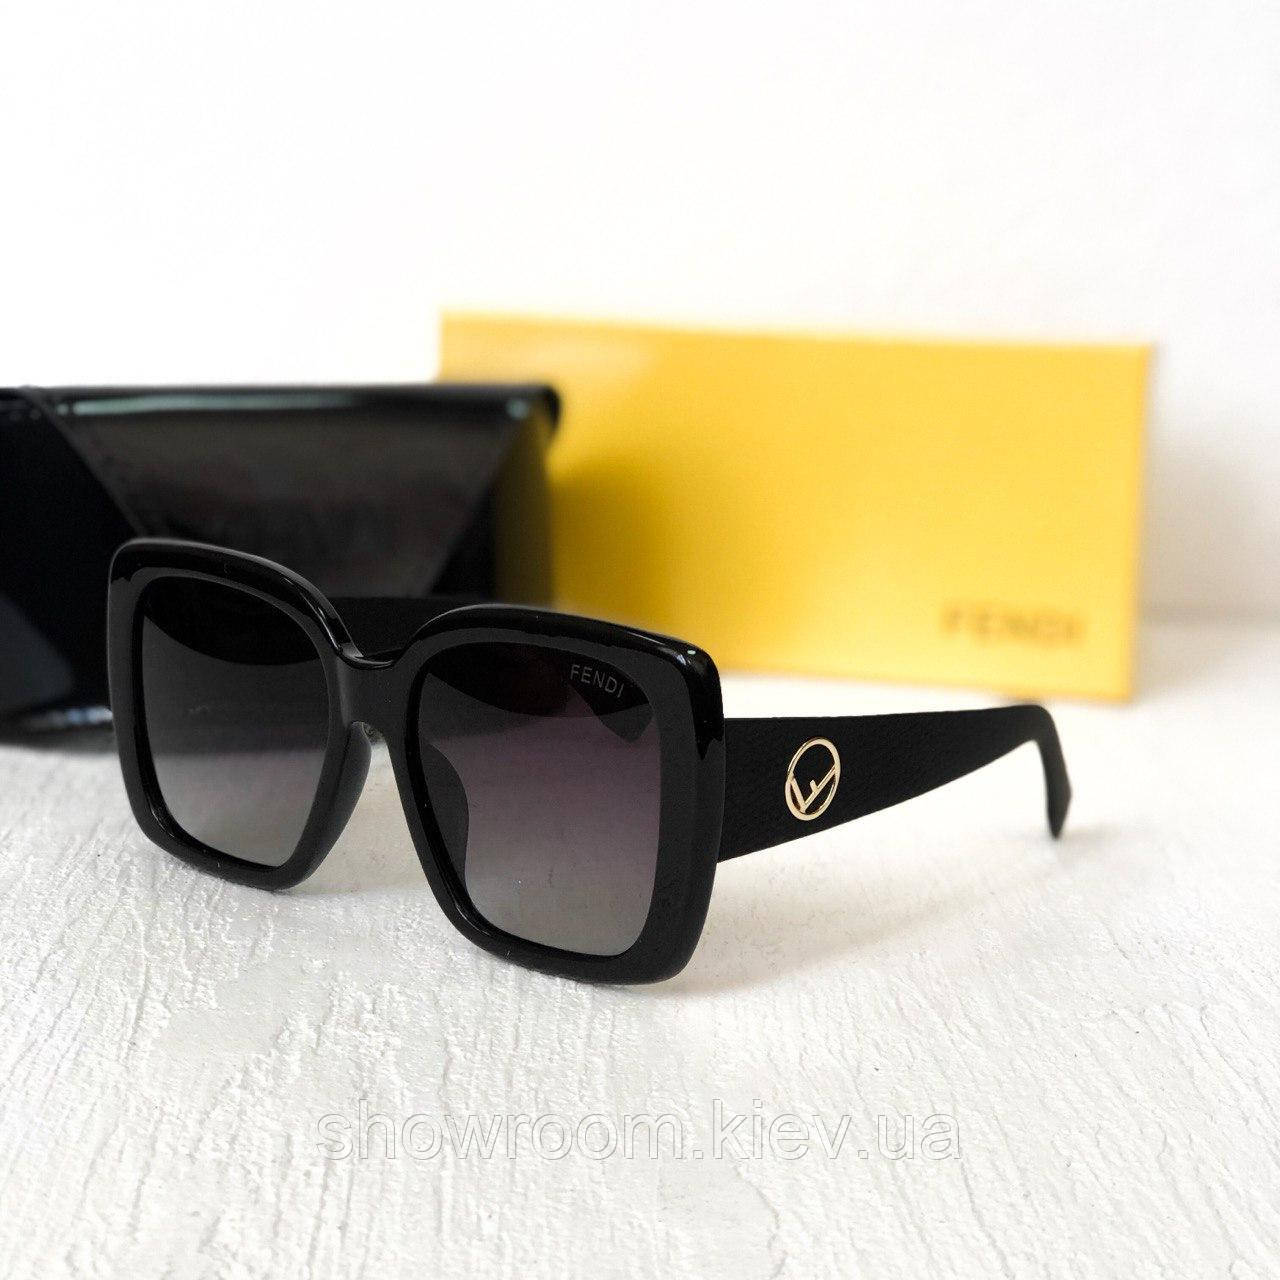 Жіночі сонцезахисні окуляри з поляризацією Fendi (2019) black